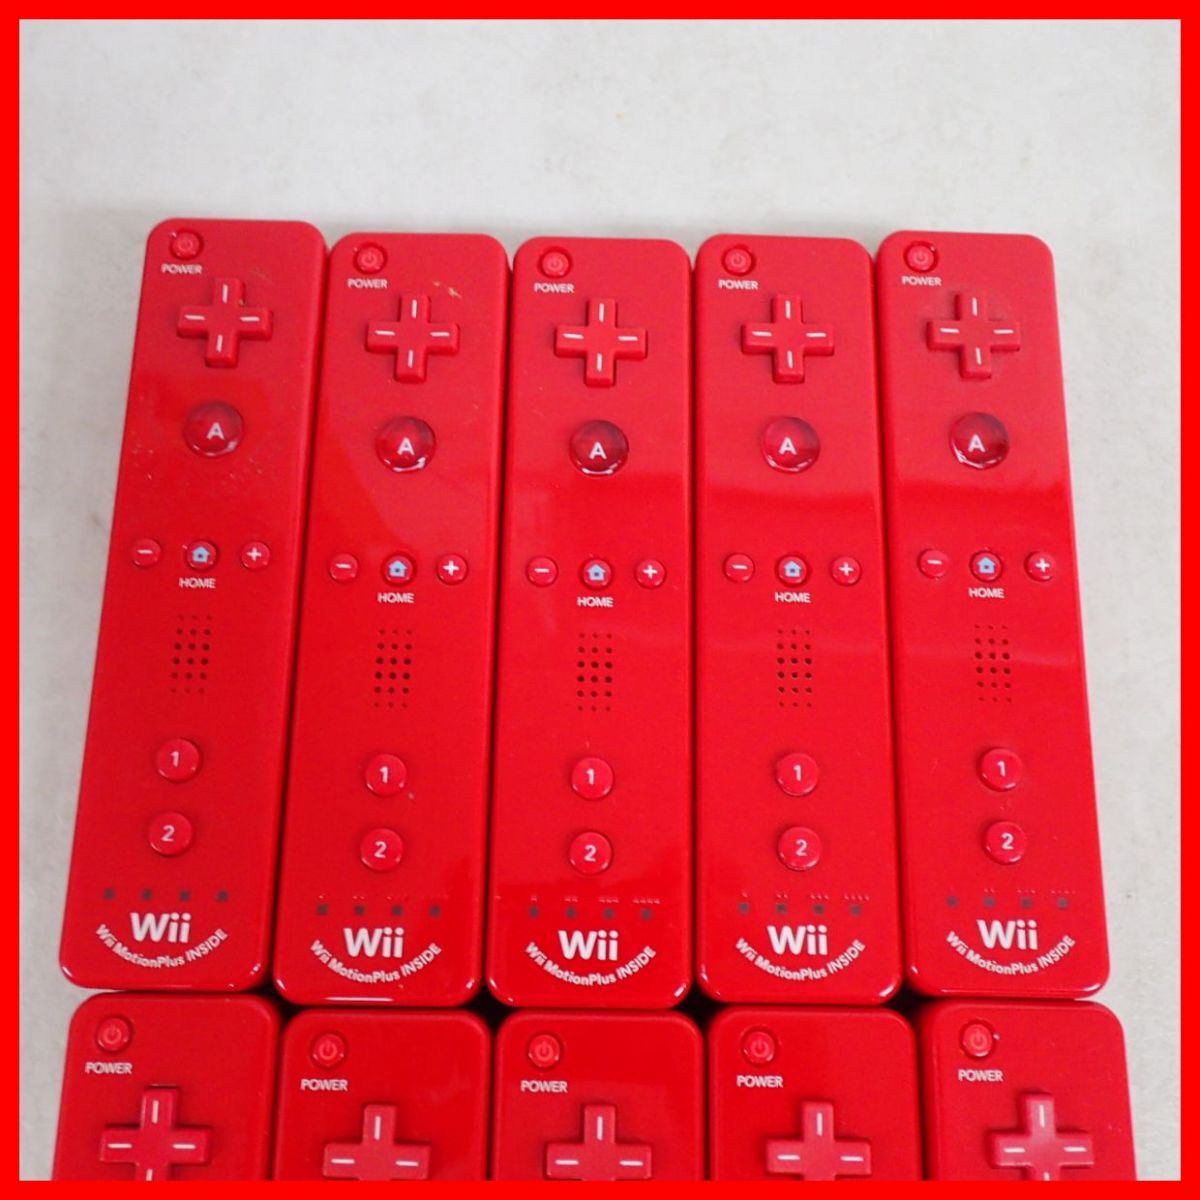 Wii управление Wii дистанционный пульт плюс RVL-036 красный совместно 10 шт много комплект nintendo Nintendo силикон с покрытием [10